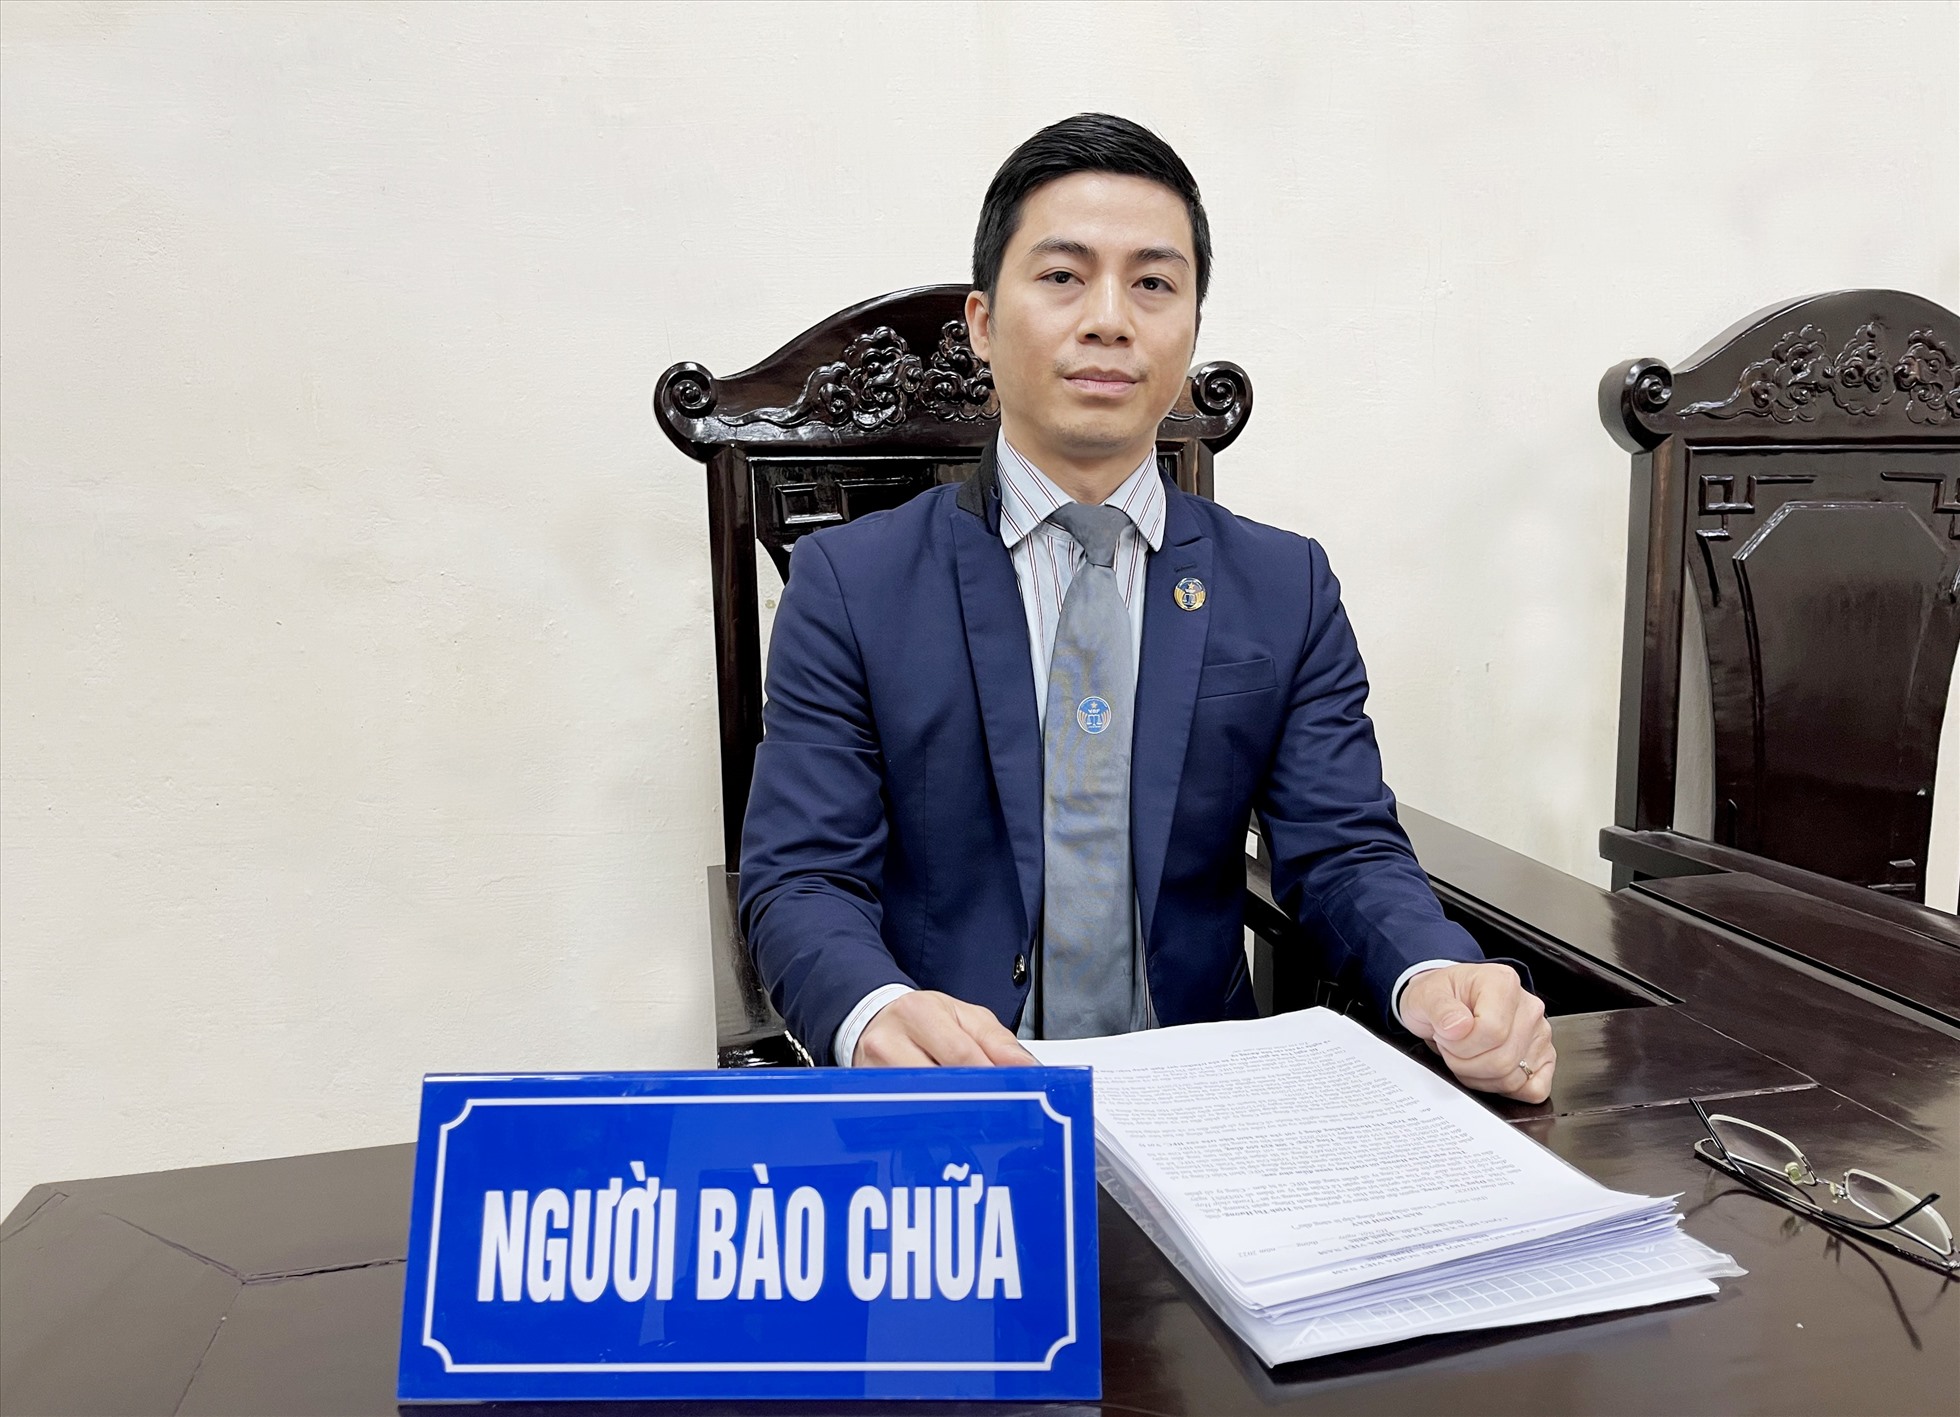 Luật sư Nguyễn Văn Đồng chia sẻ về giải pháp ngăn chặn các vụ án mạng gia đình. Ảnh: Nhân vật cung cấp